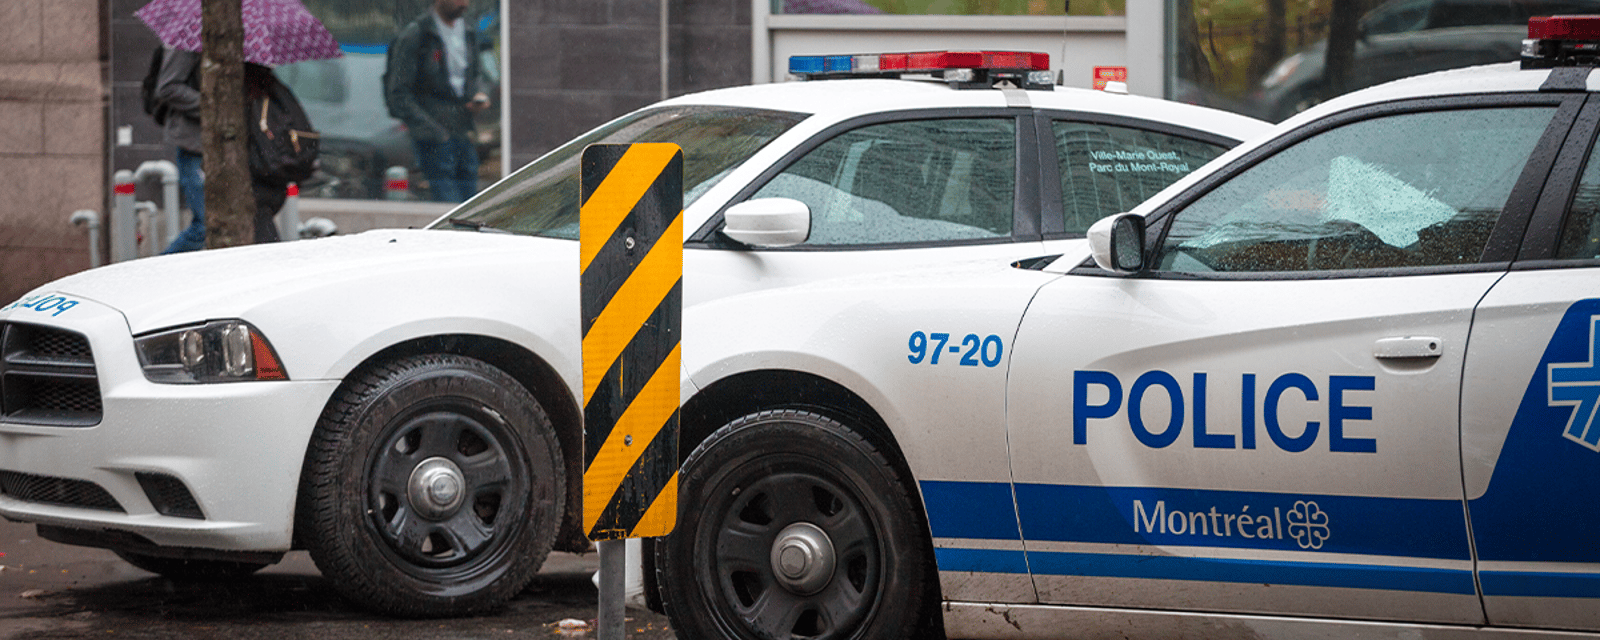 Coupures de budget: les policiers de Montréal n’ont plus le droit de faire laver leurs autopatrouilles 